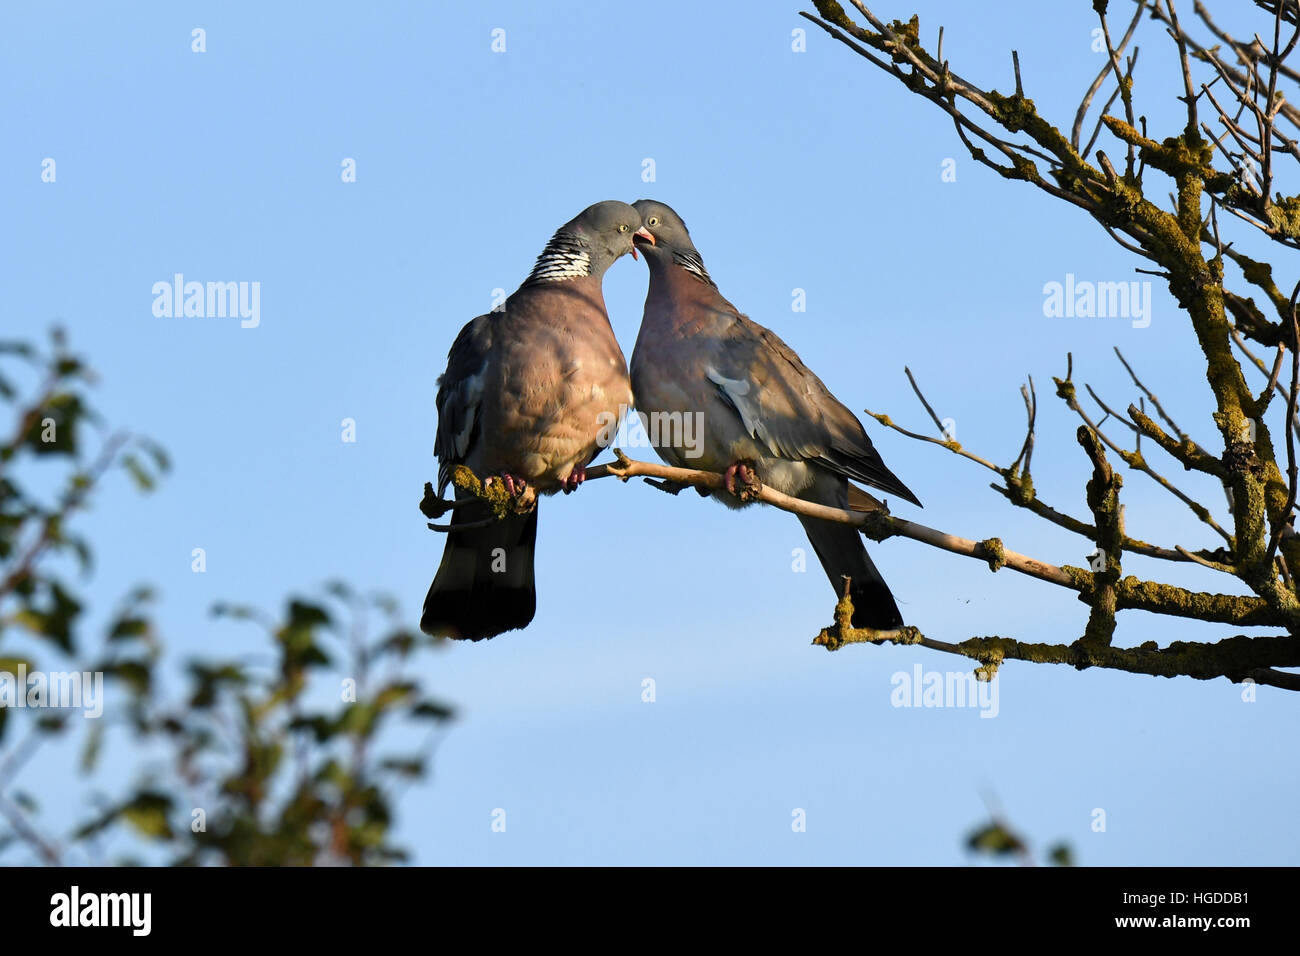 Ringlet pigeon Stock Photo